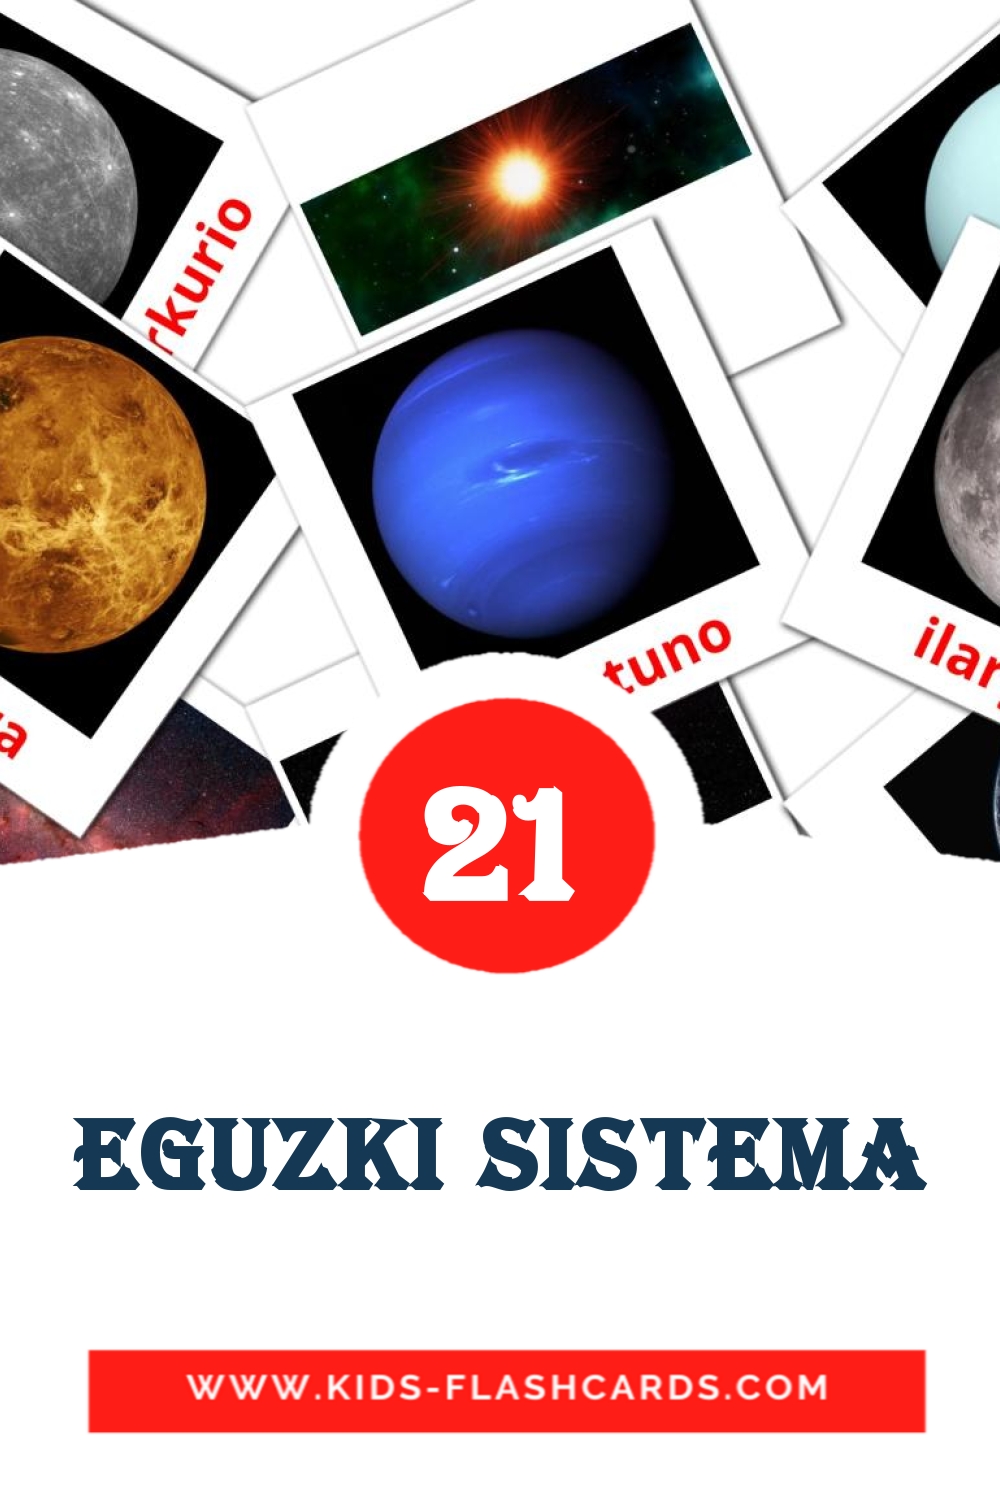 21 eguzki sistema fotokaarten voor kleuters in het baskisch